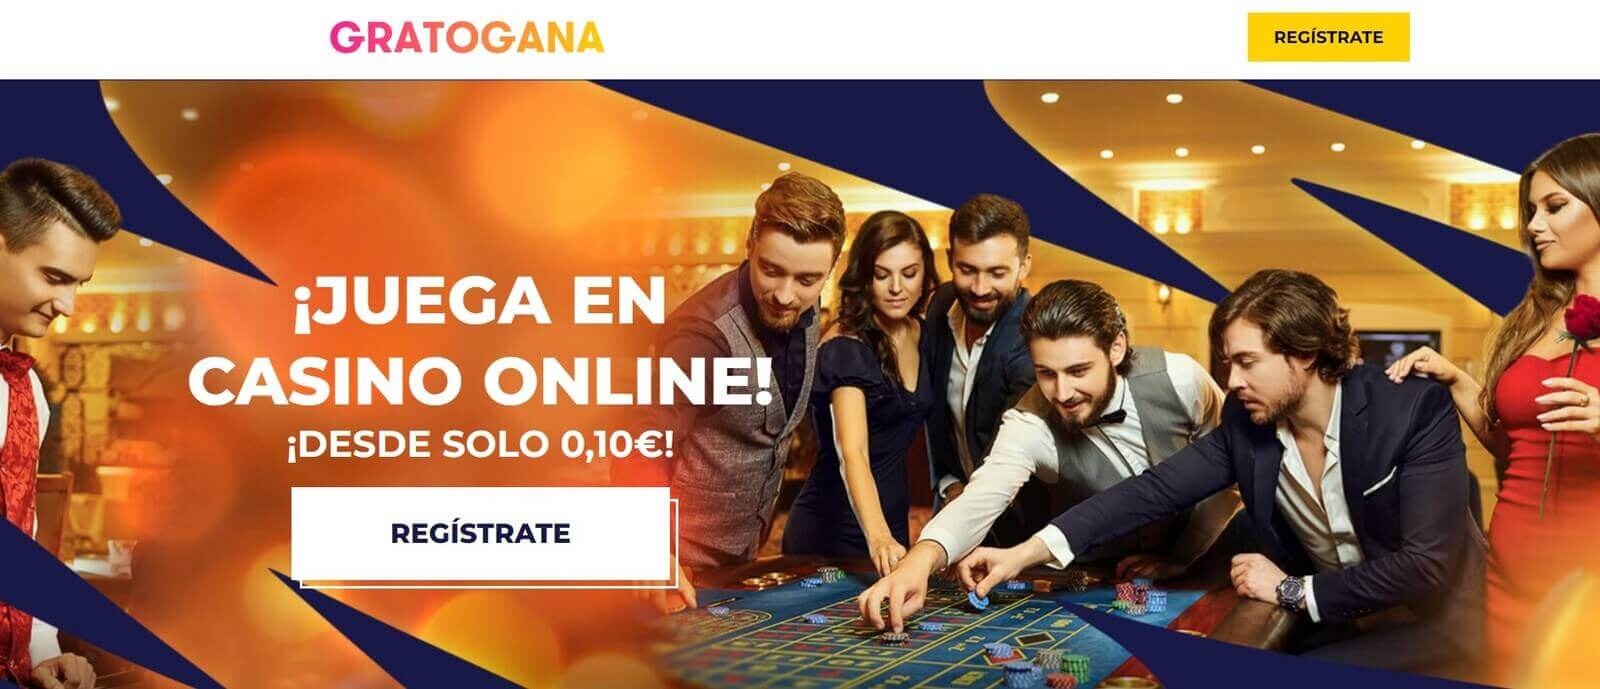 Reseña de Gratogana Casino con depósito mínimo 1€